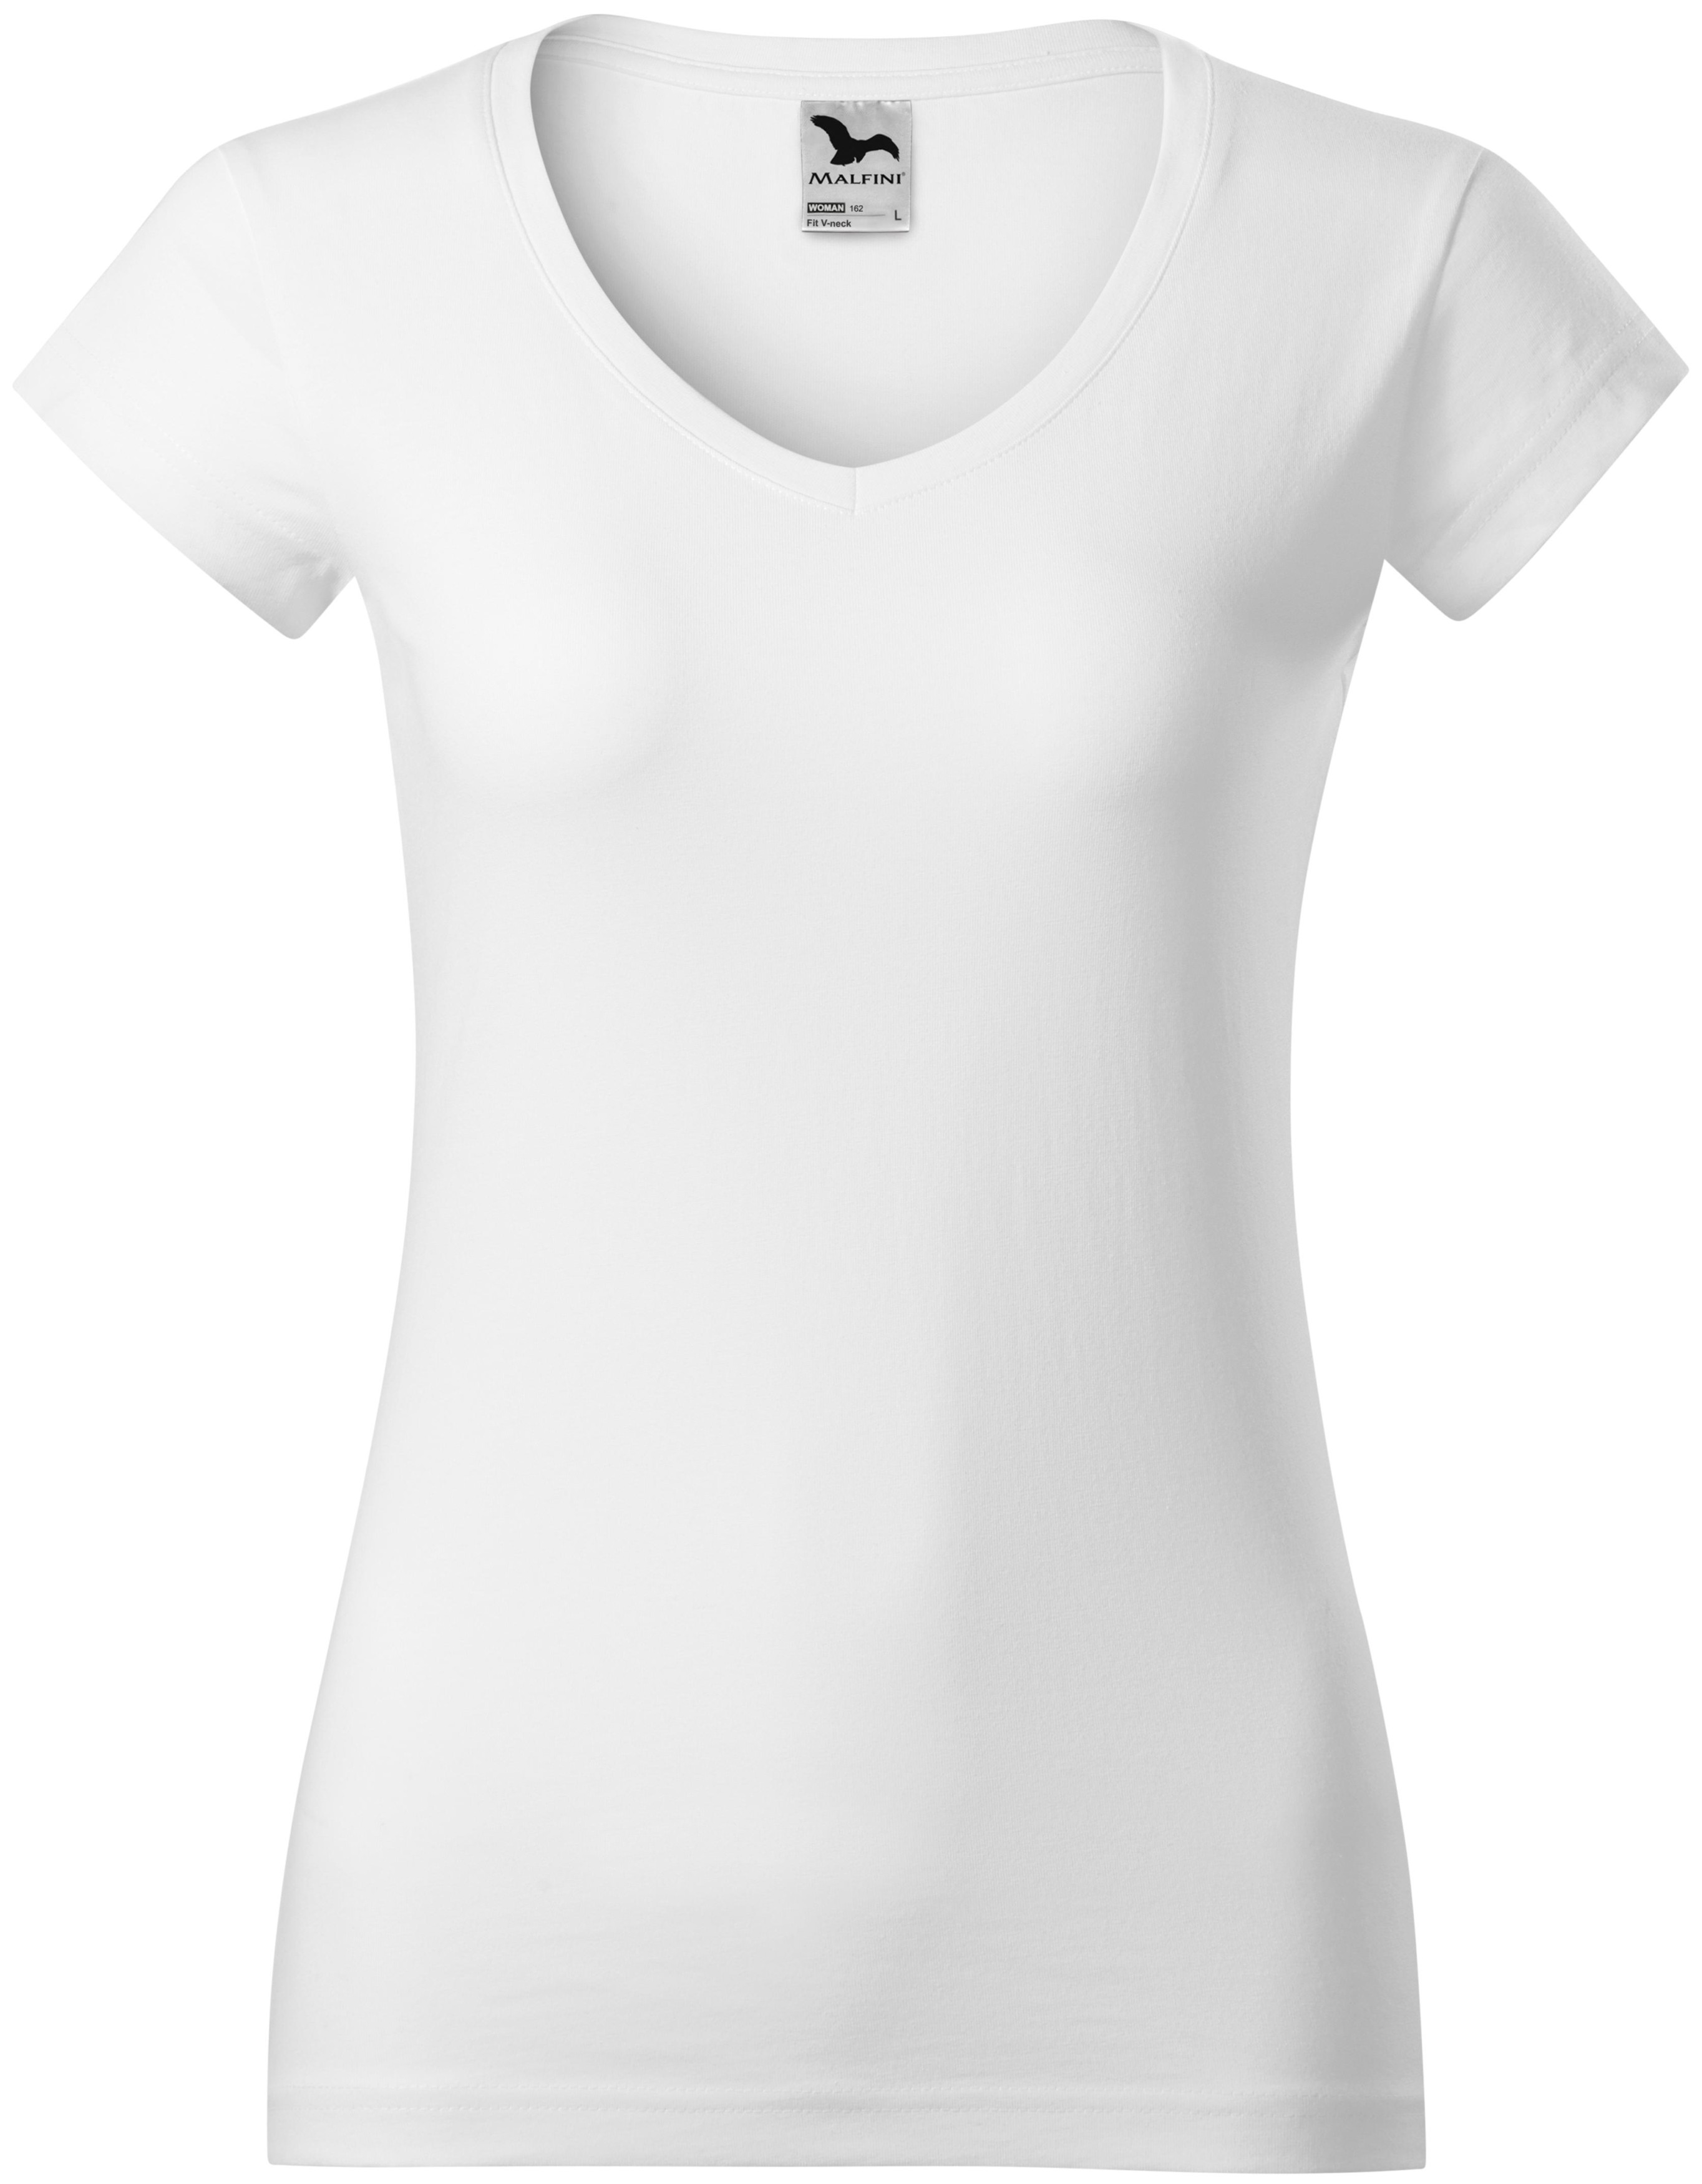 Γυναικεία μπλούζα με ντεκολτέ V, λευκό, XS